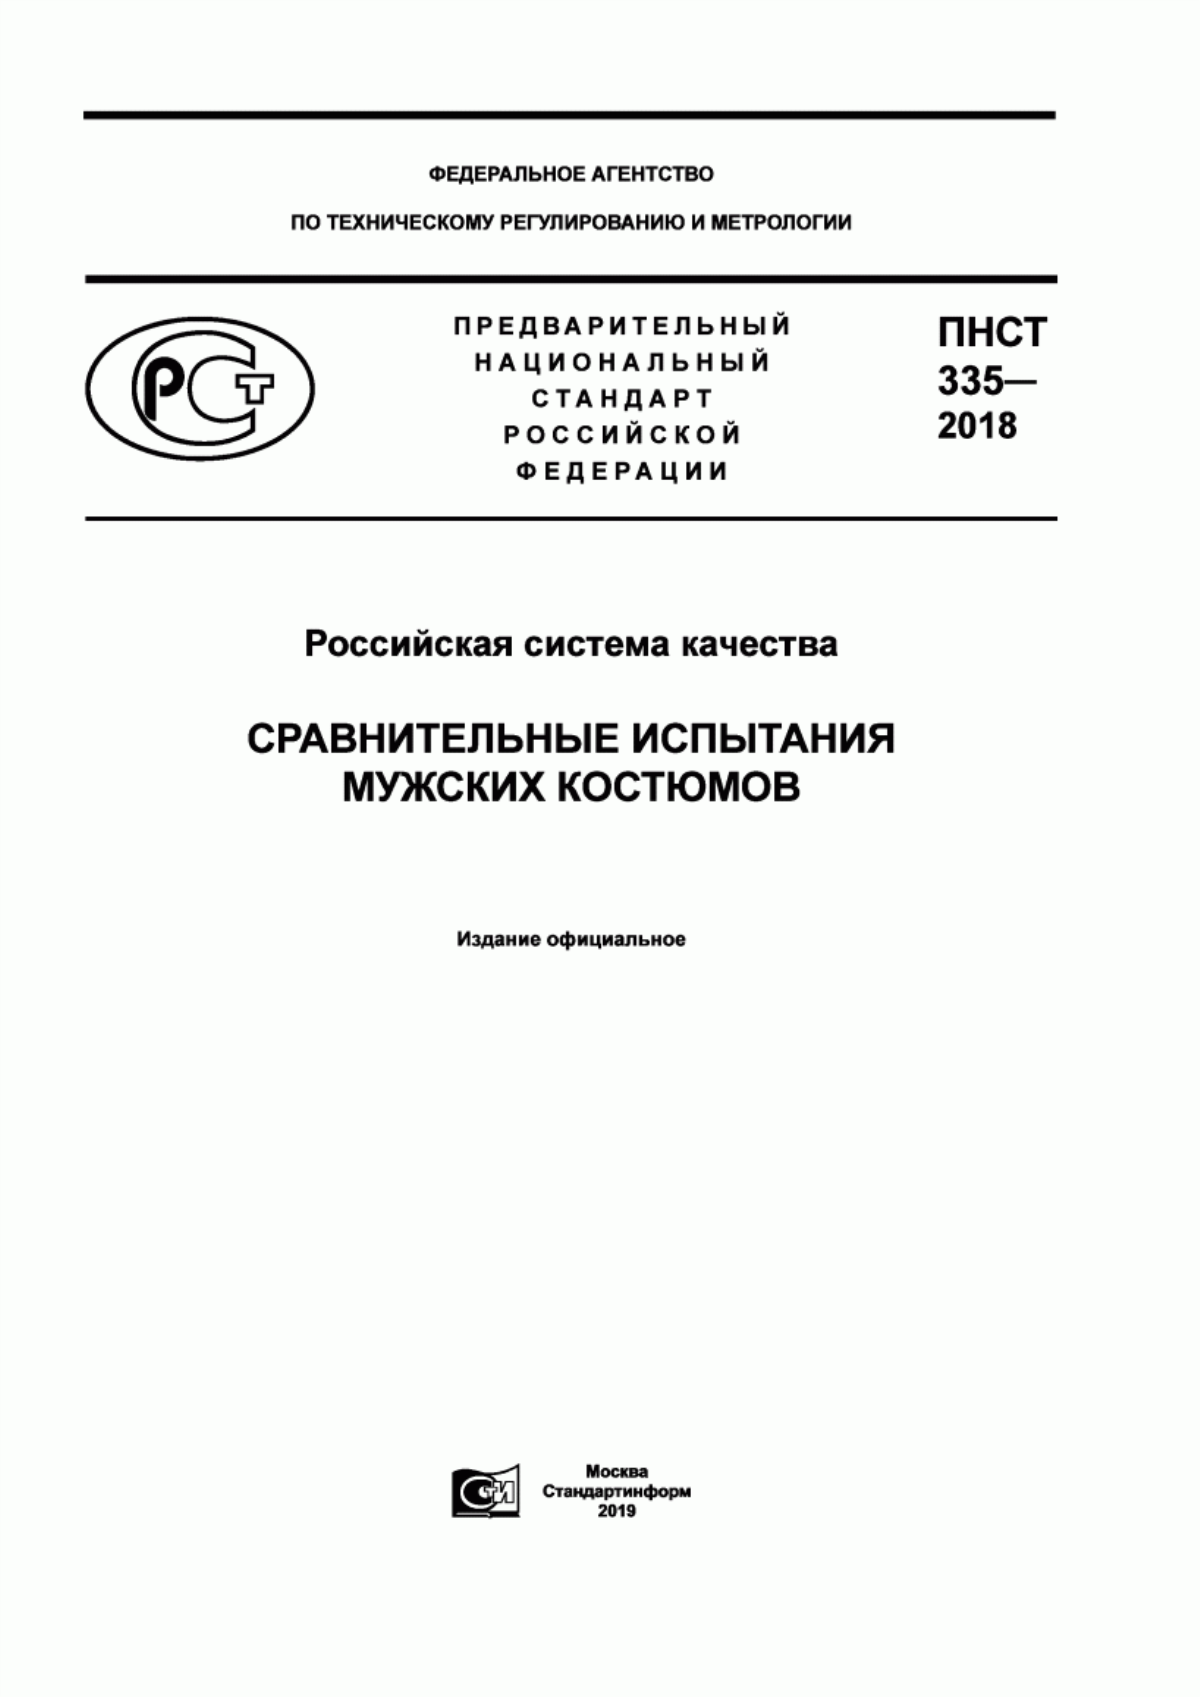 ПНСТ 335-2018 Российская система качества. Сравнительные испытания мужских костюмов